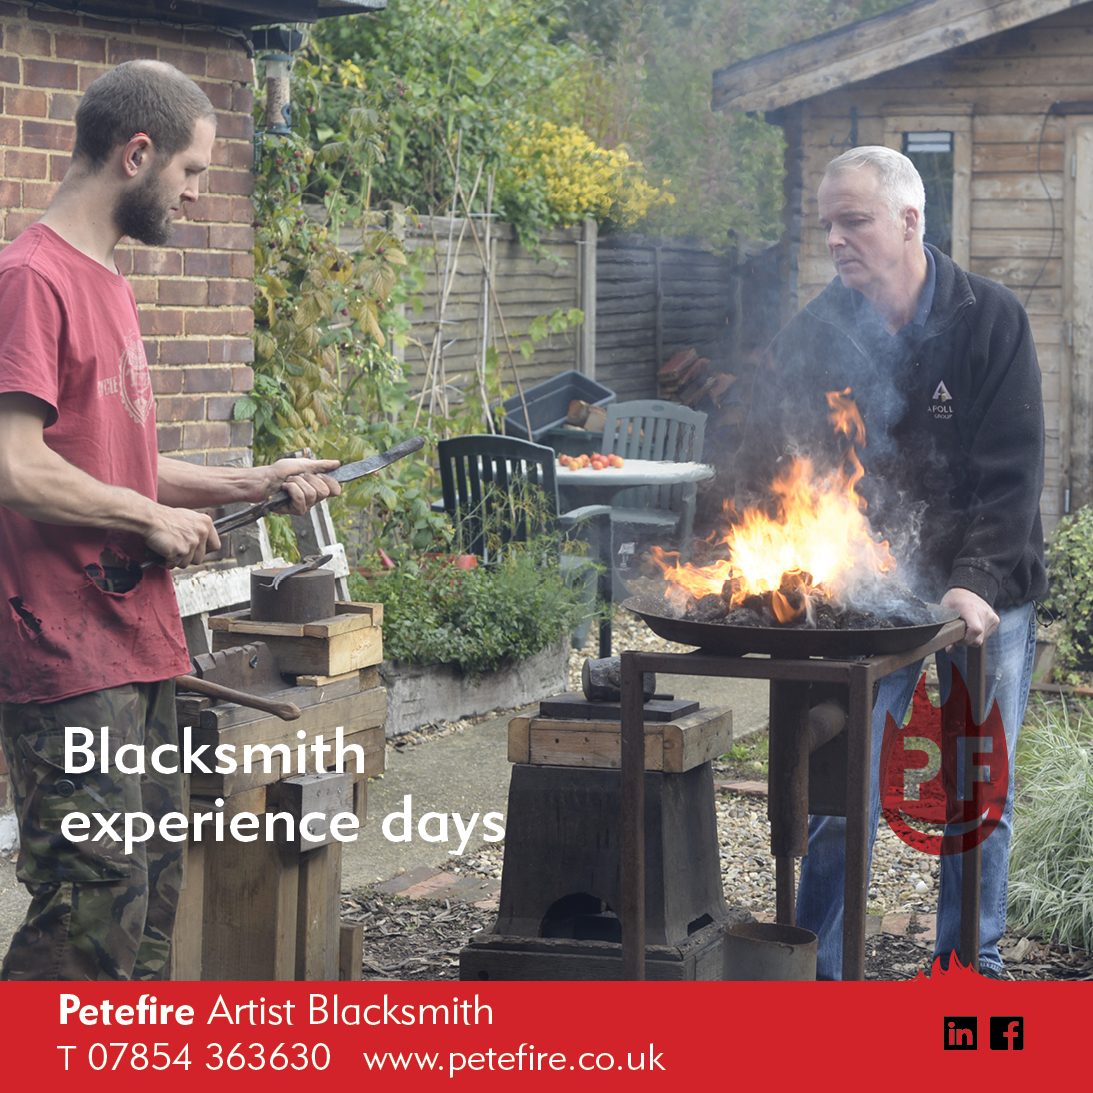 Petefire Artist Blacksmith, Experience Days